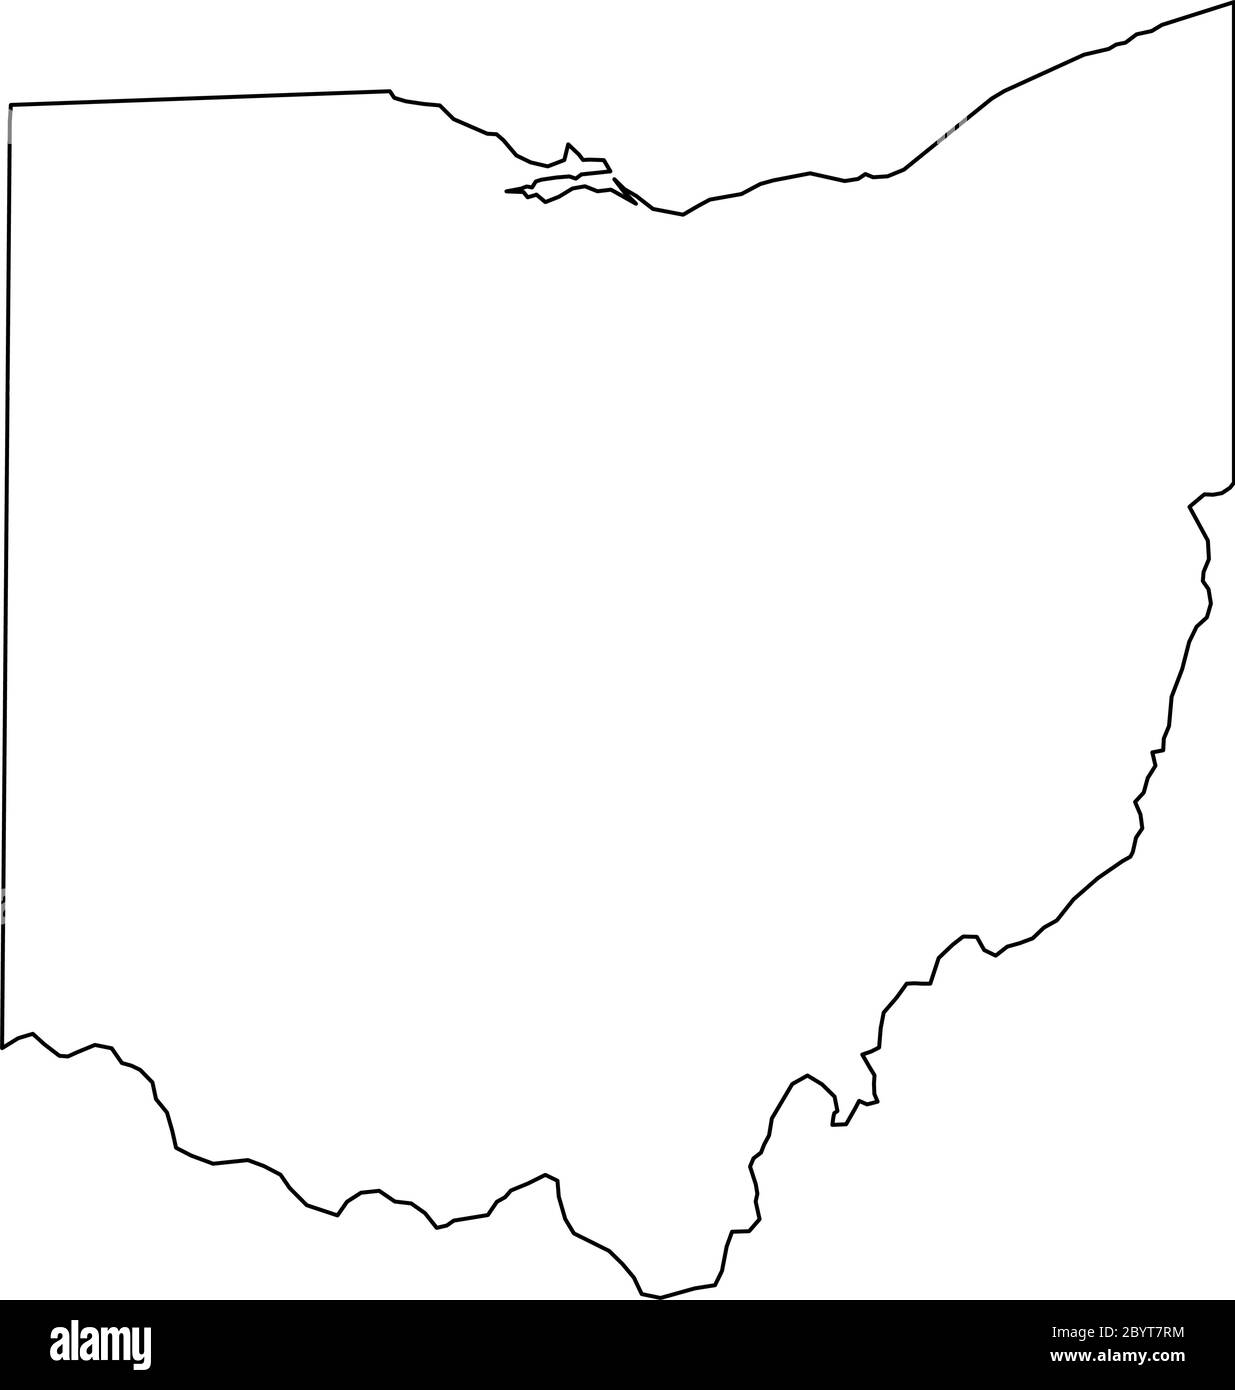 Ohio, État des États-Unis - carte de la région du pays en noir Uni. Illustration simple à vecteur plat. Illustration de Vecteur